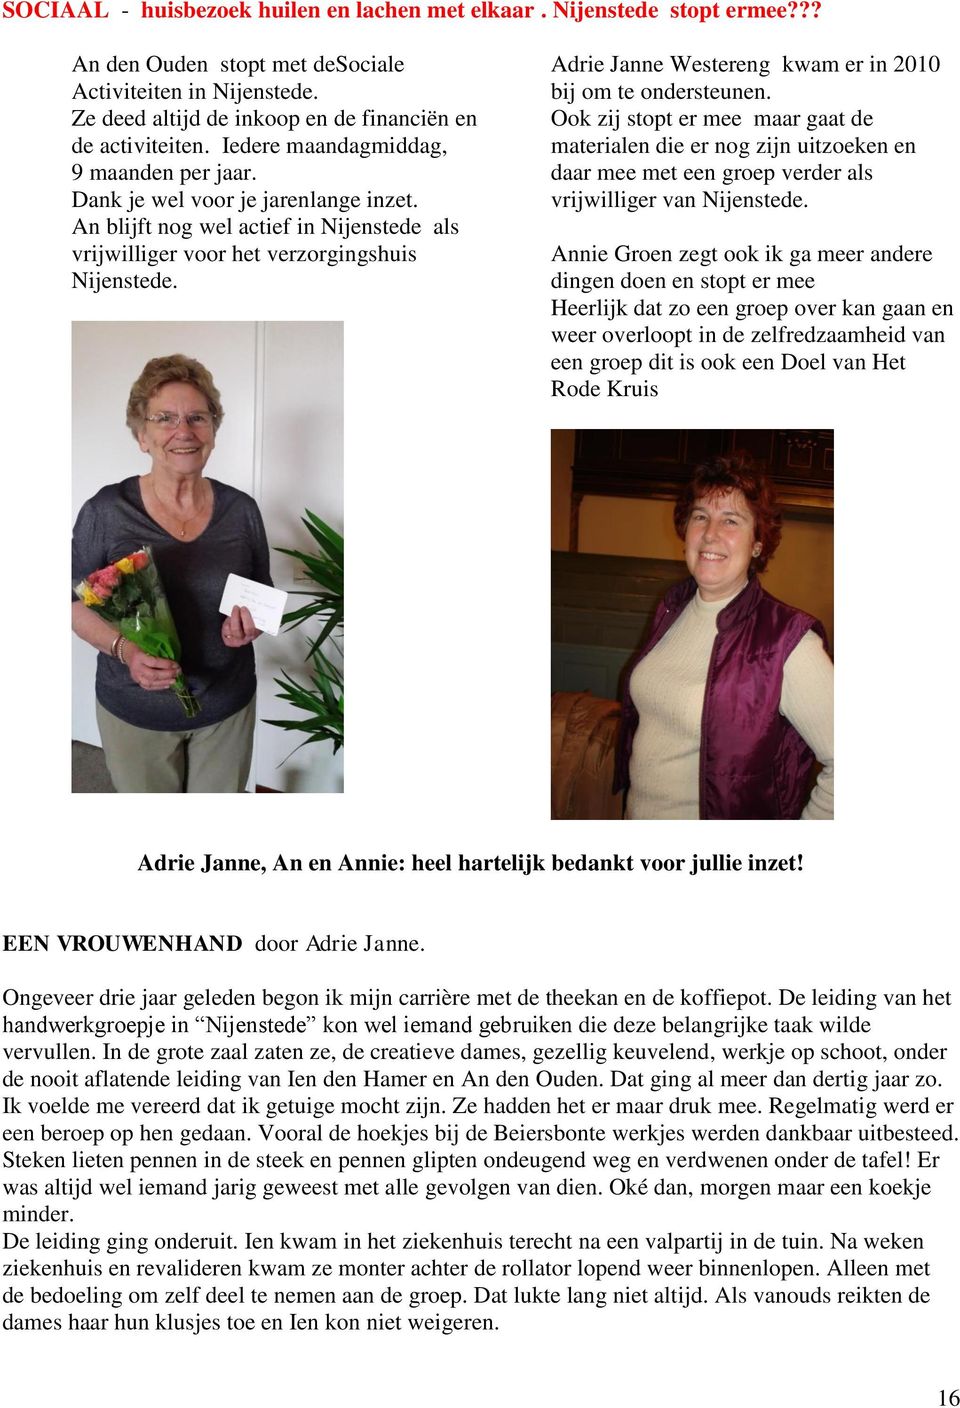 Adrie Janne Westereng kwam er in 2010 bij om te ondersteunen. Ook zij stopt er mee maar gaat de materialen die er nog zijn uitzoeken en daar mee met een groep verder als vrijwilliger van Nijenstede.